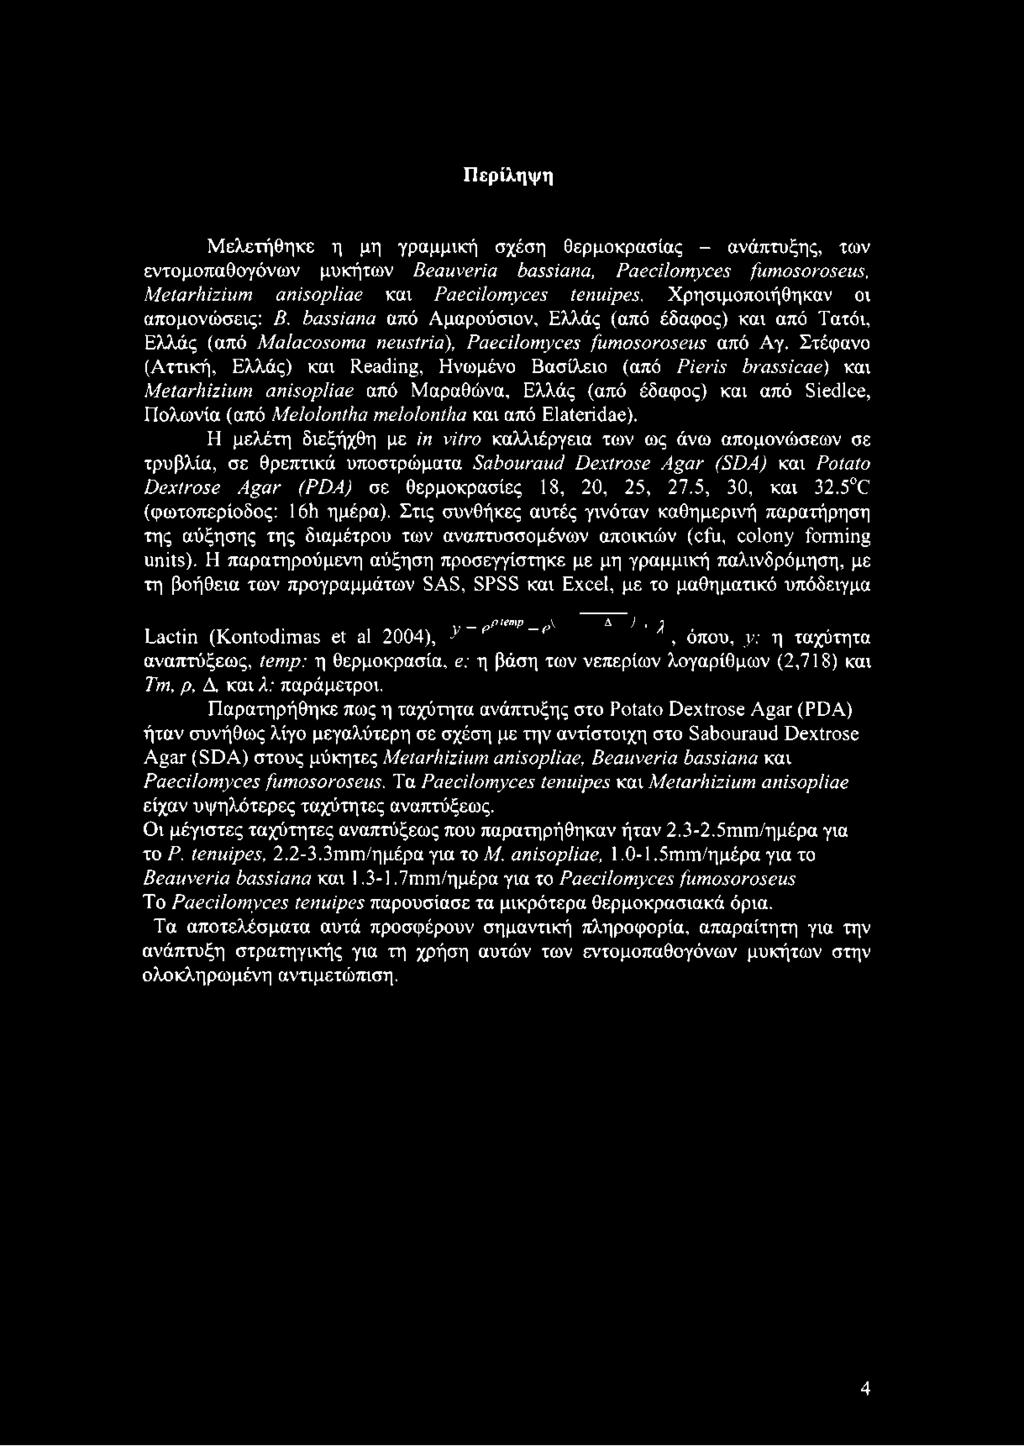 Στέφανο (Αττική, Ελλάς) και Reading, Ηνωμένο Βασίλειο (από Pieris brassicae) και Metarhizium anisopliae από Μαραθώνα, Ελλάς (από έδαφος) και από Siedlce, Πολωνία (από Melolontha melolontha και από